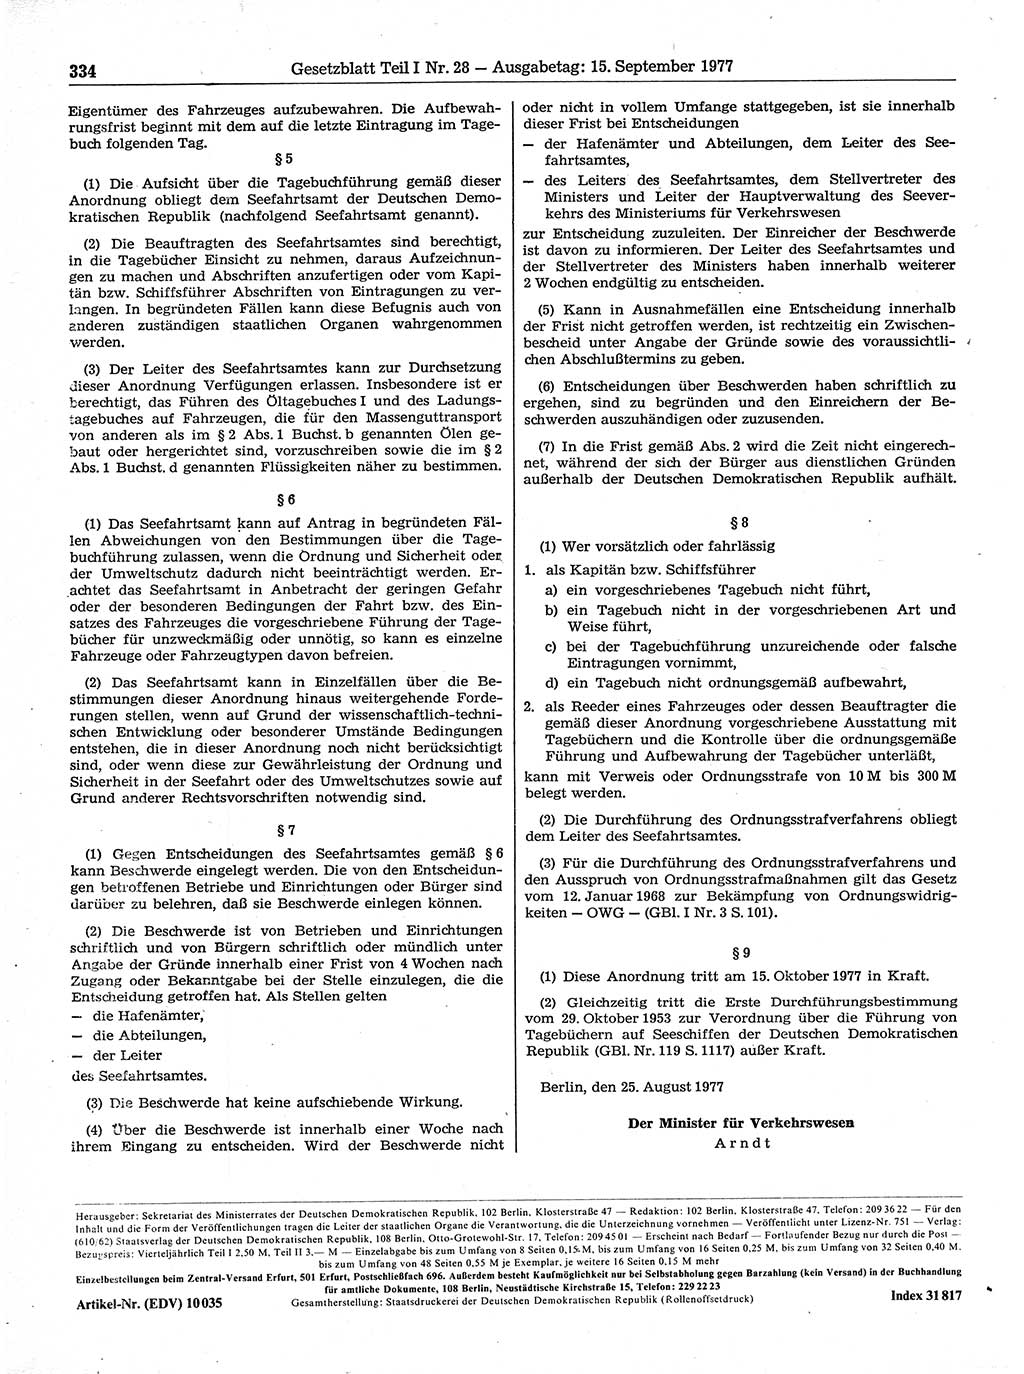 Gesetzblatt (GBl.) der Deutschen Demokratischen Republik (DDR) Teil Ⅰ 1977, Seite 334 (GBl. DDR Ⅰ 1977, S. 334)